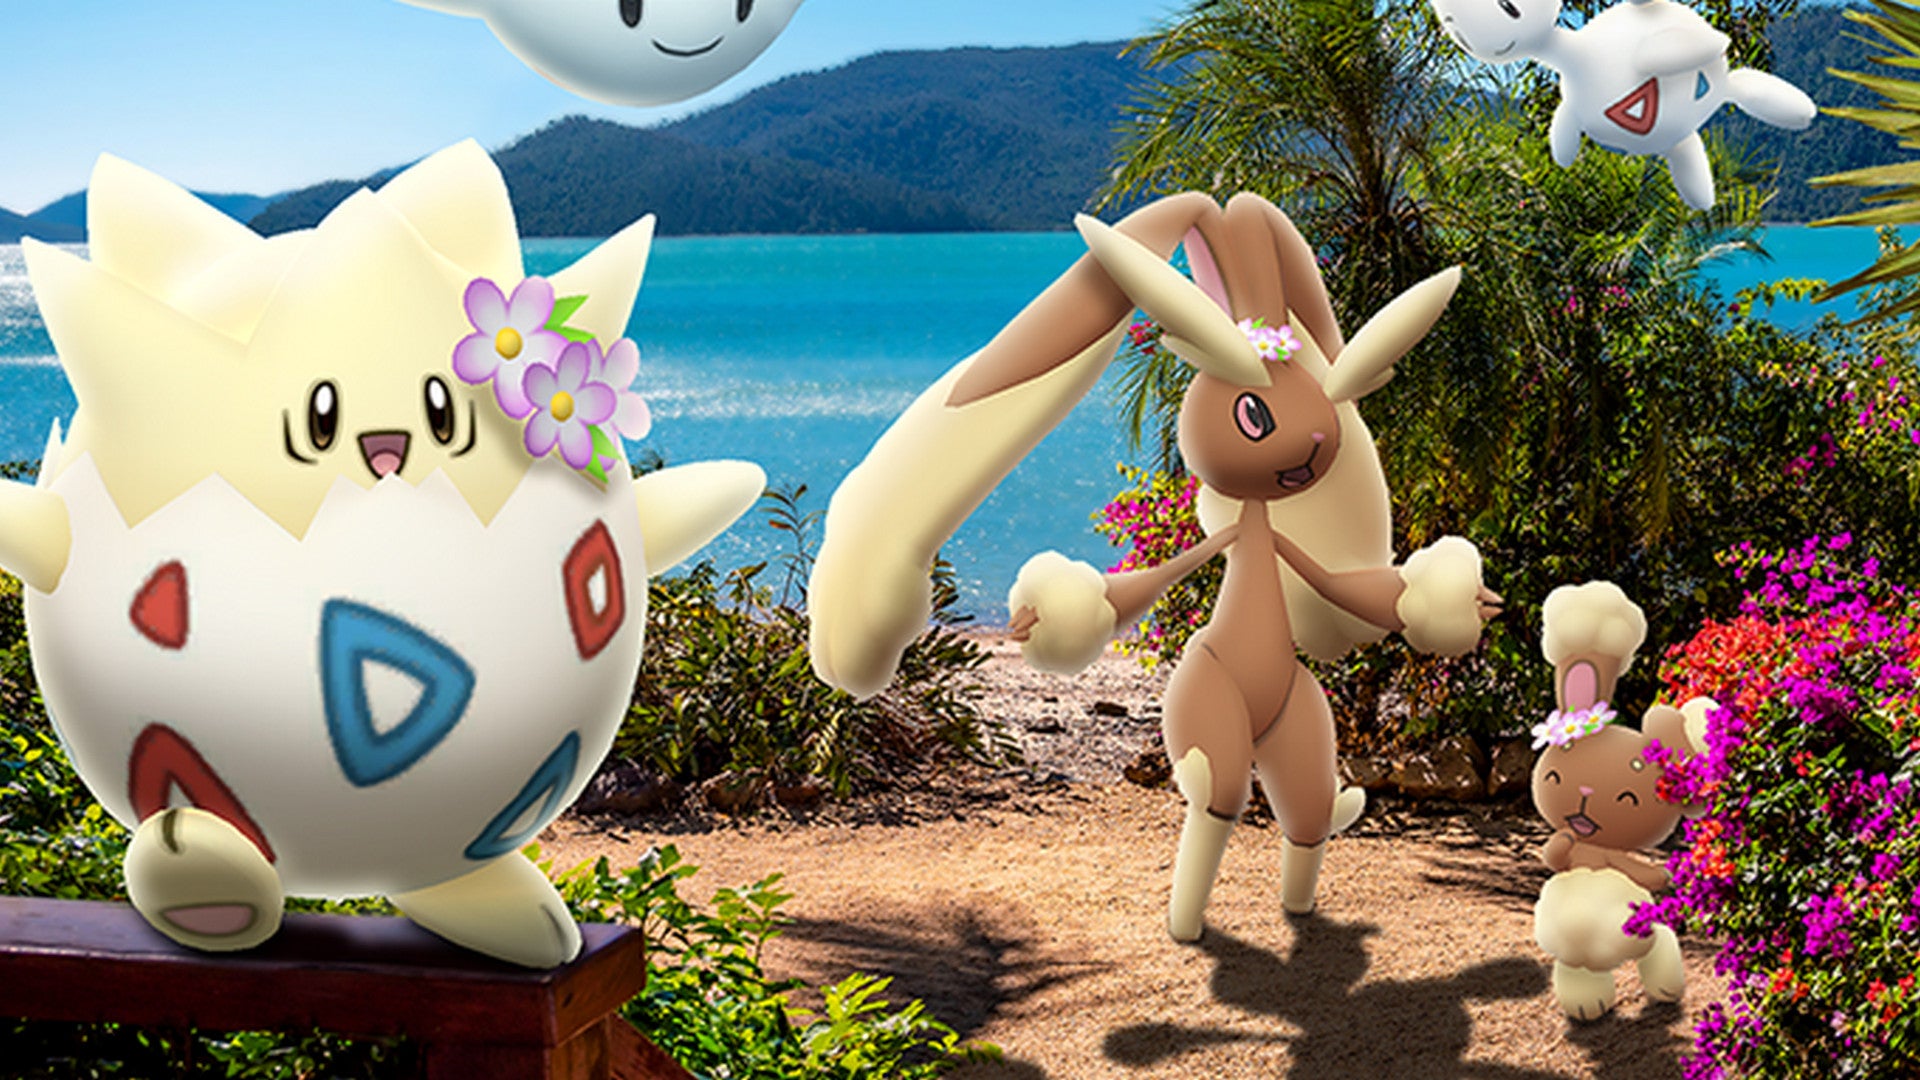 Bilder zu Pokémon Go: So ändern sich die Mega-Entwicklungen - Niantic bestätigt Anpassungen